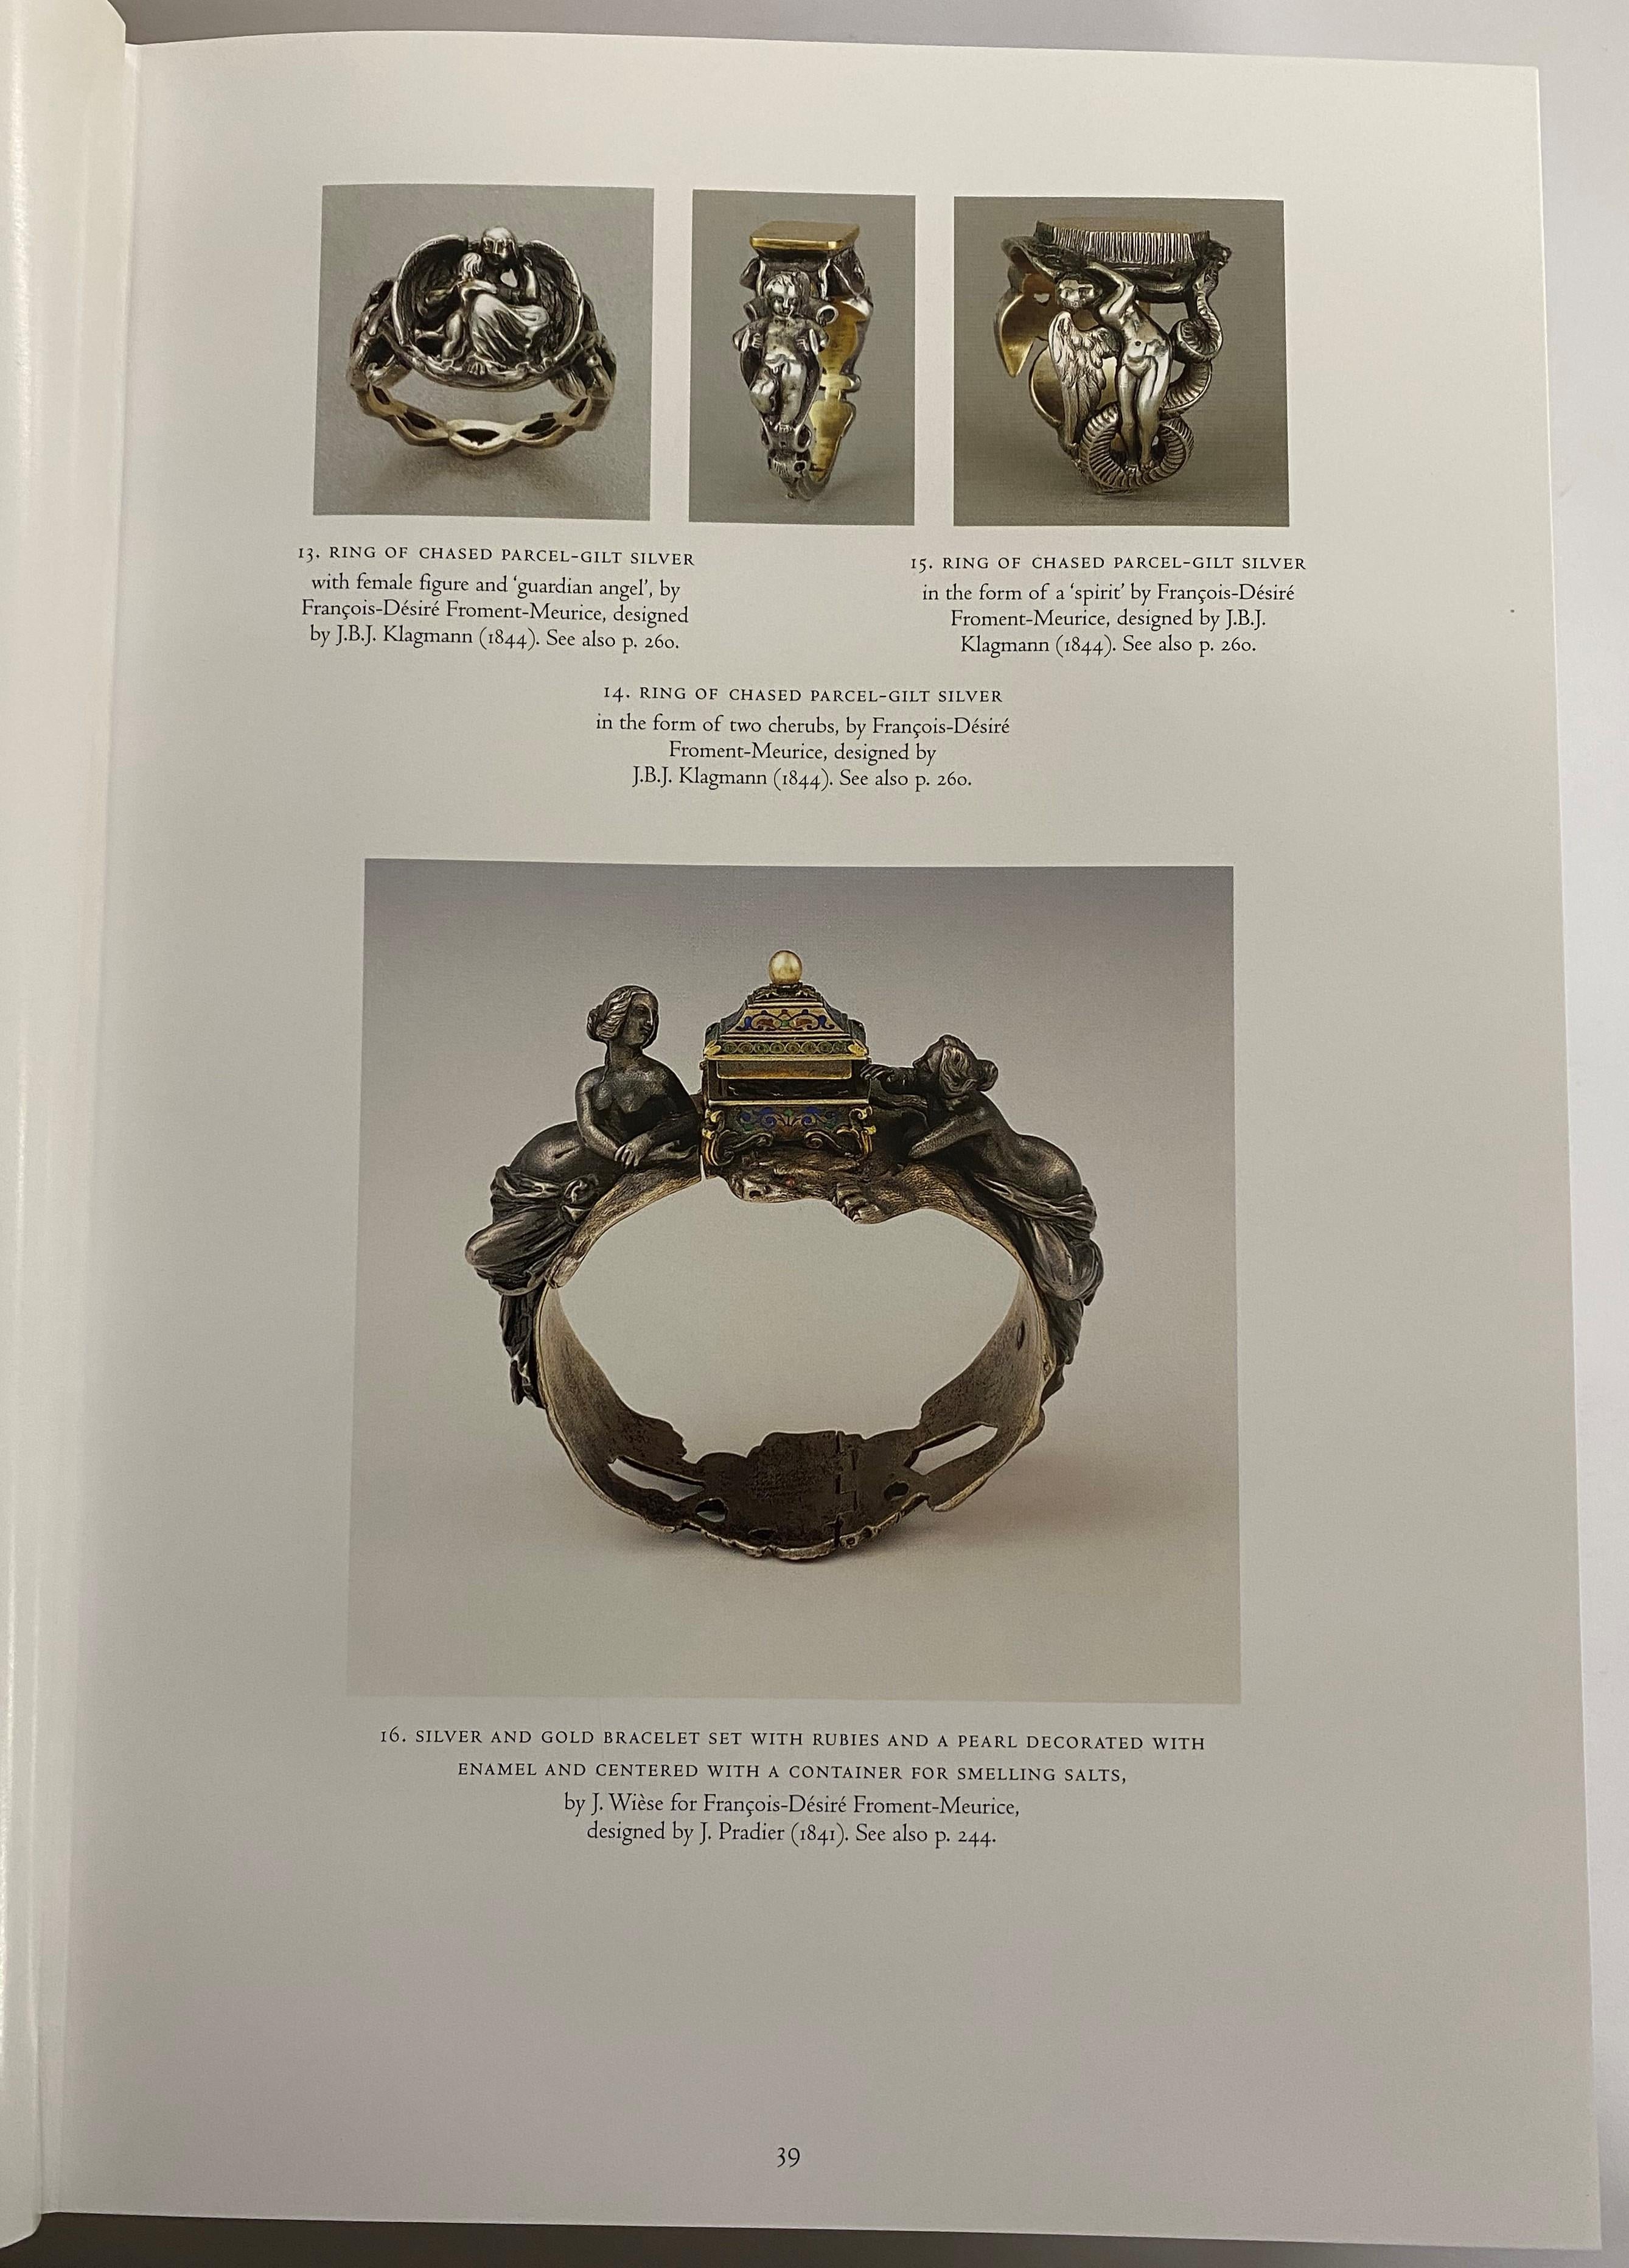 Arje Griegst for Royal Copenhagen Jewelry - 2 For Sale at 1stdibs | griegst  jewelry, griegst smykker, arje griegst smykker